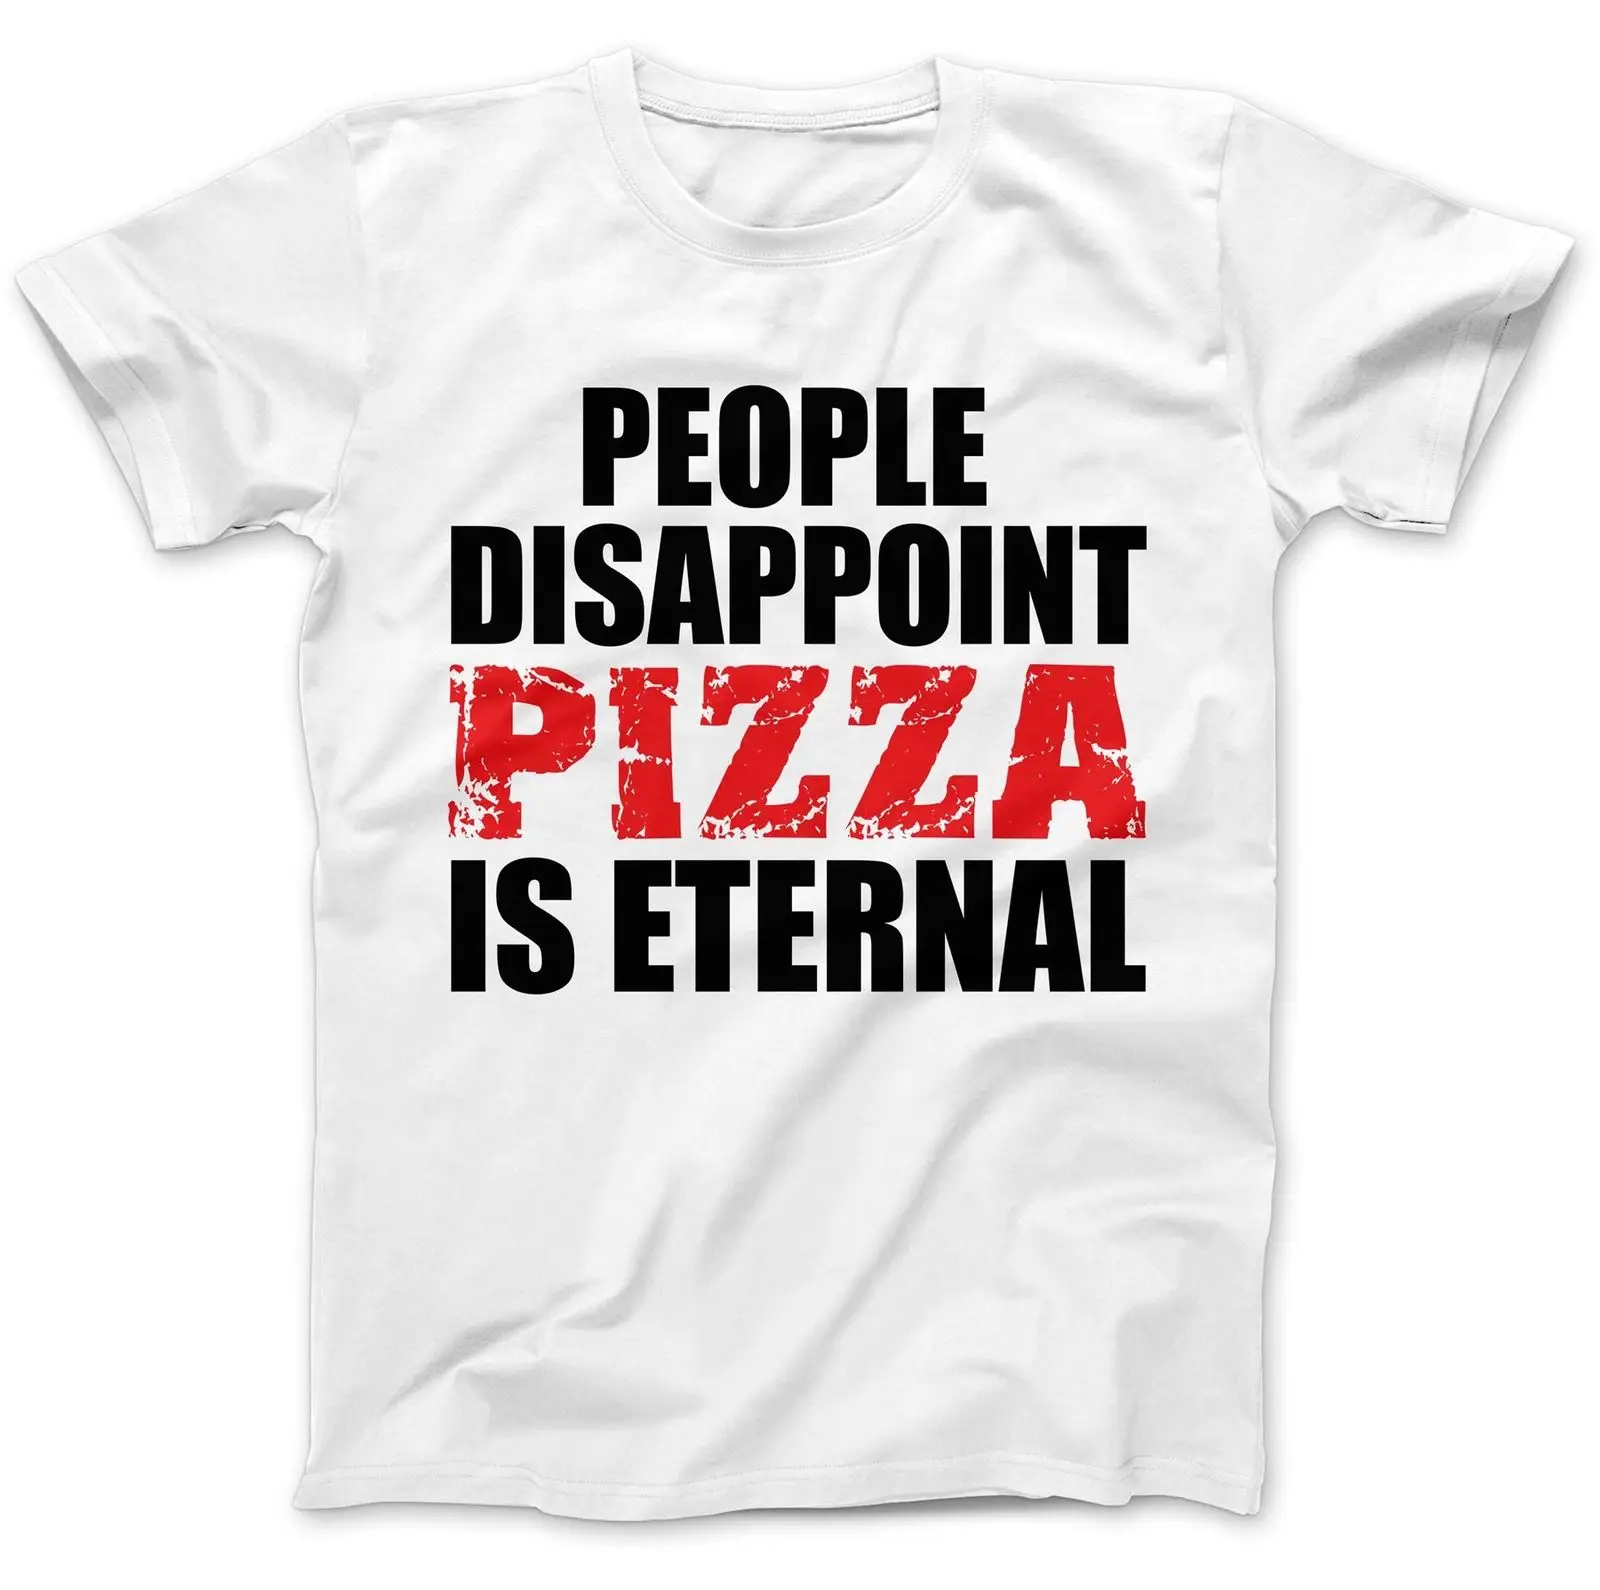 Фото Пицца это вечная футболка 100% хлопка Премиум смешной подарок присутствует белый